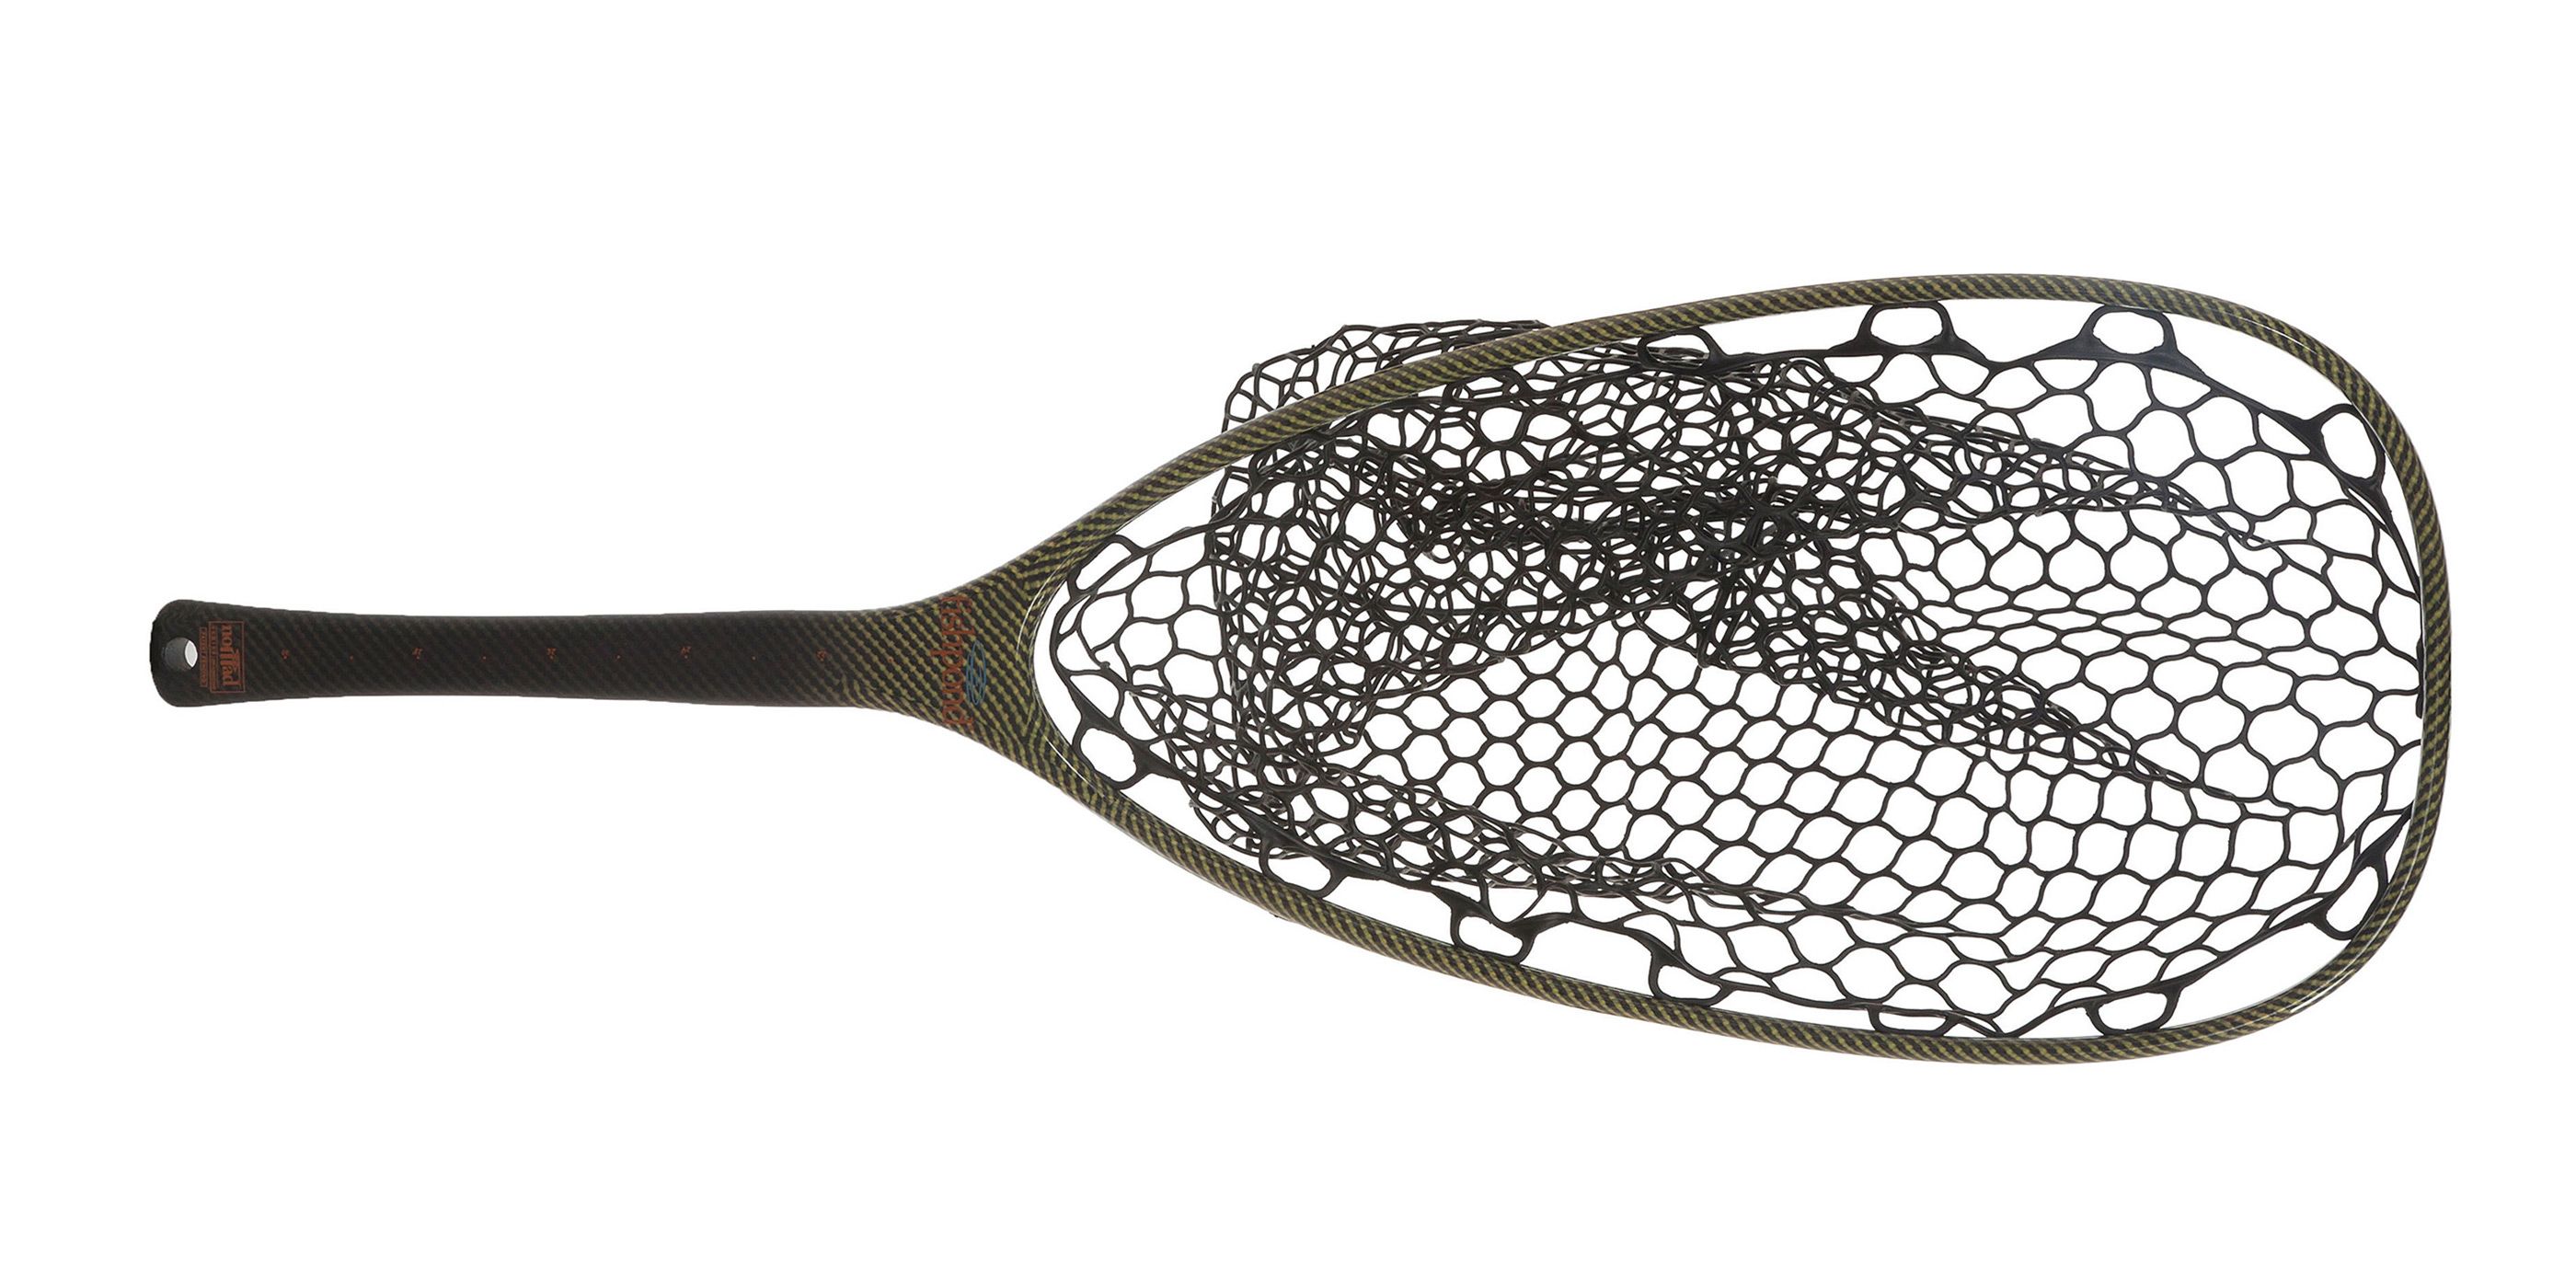 Fishpond Nomad™ Emerger - River Armor Net